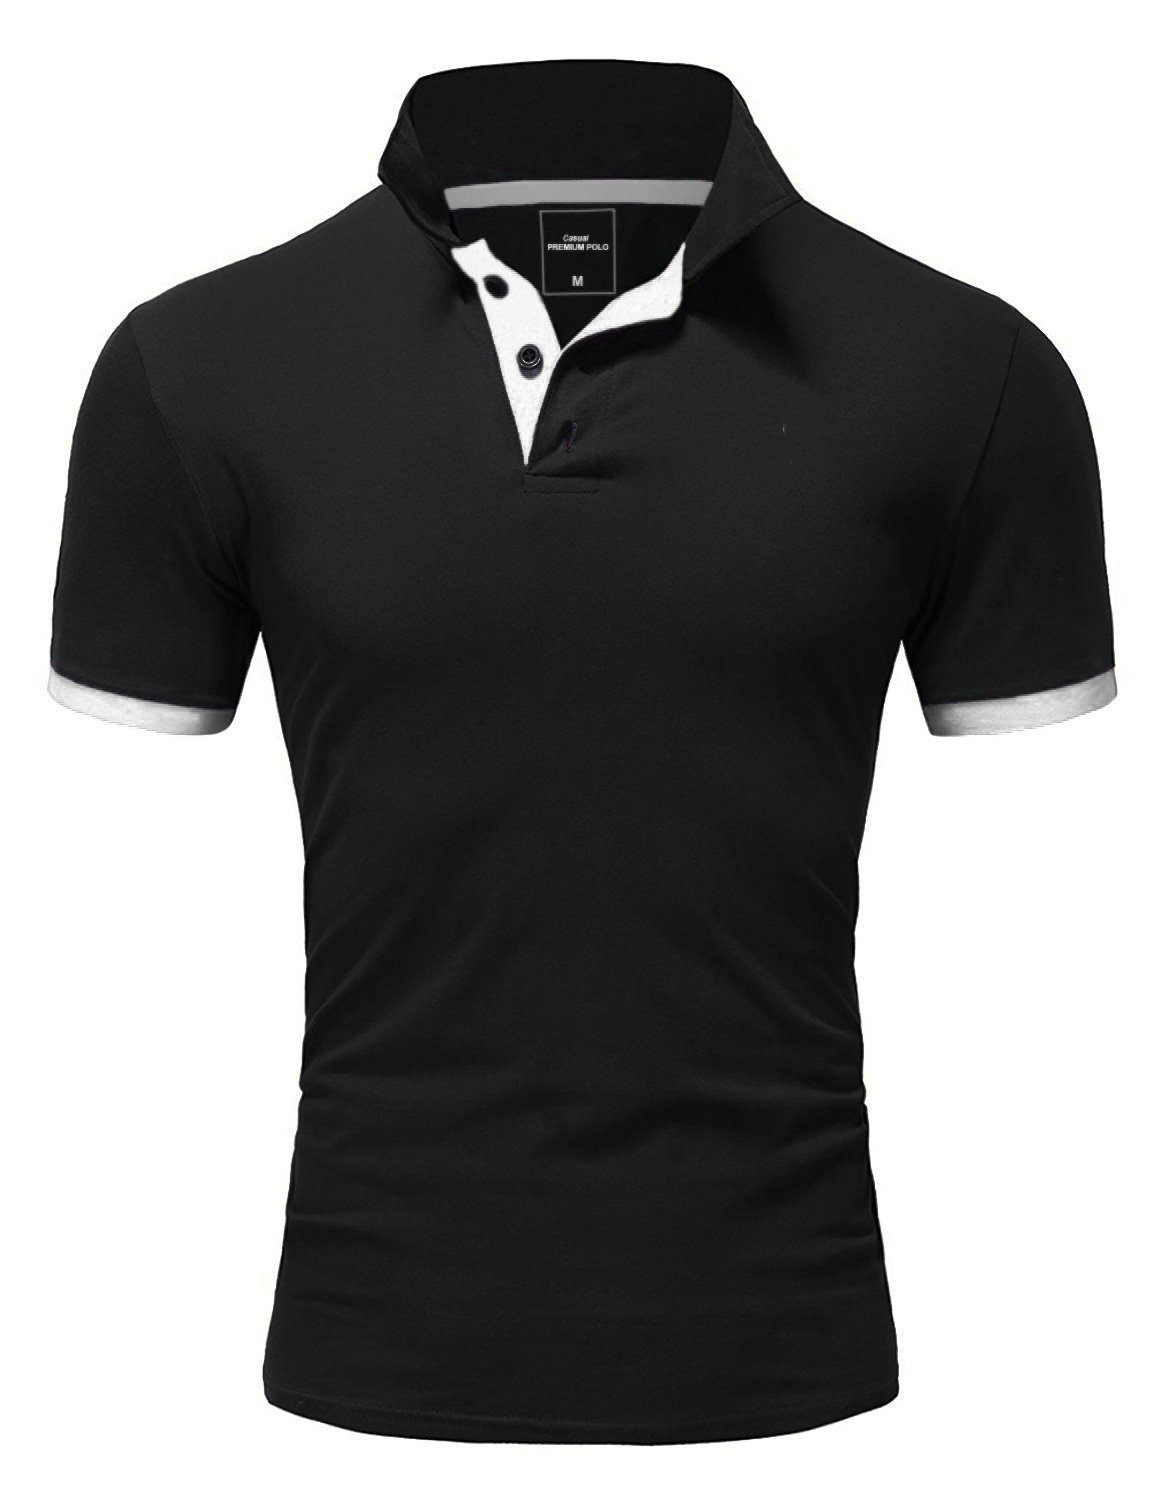 Schwarz/Weiß RONALD Shirt Piqué kontrastierenden Akzenten, REPUBLIX Poloshirt Herren mit in Qualität